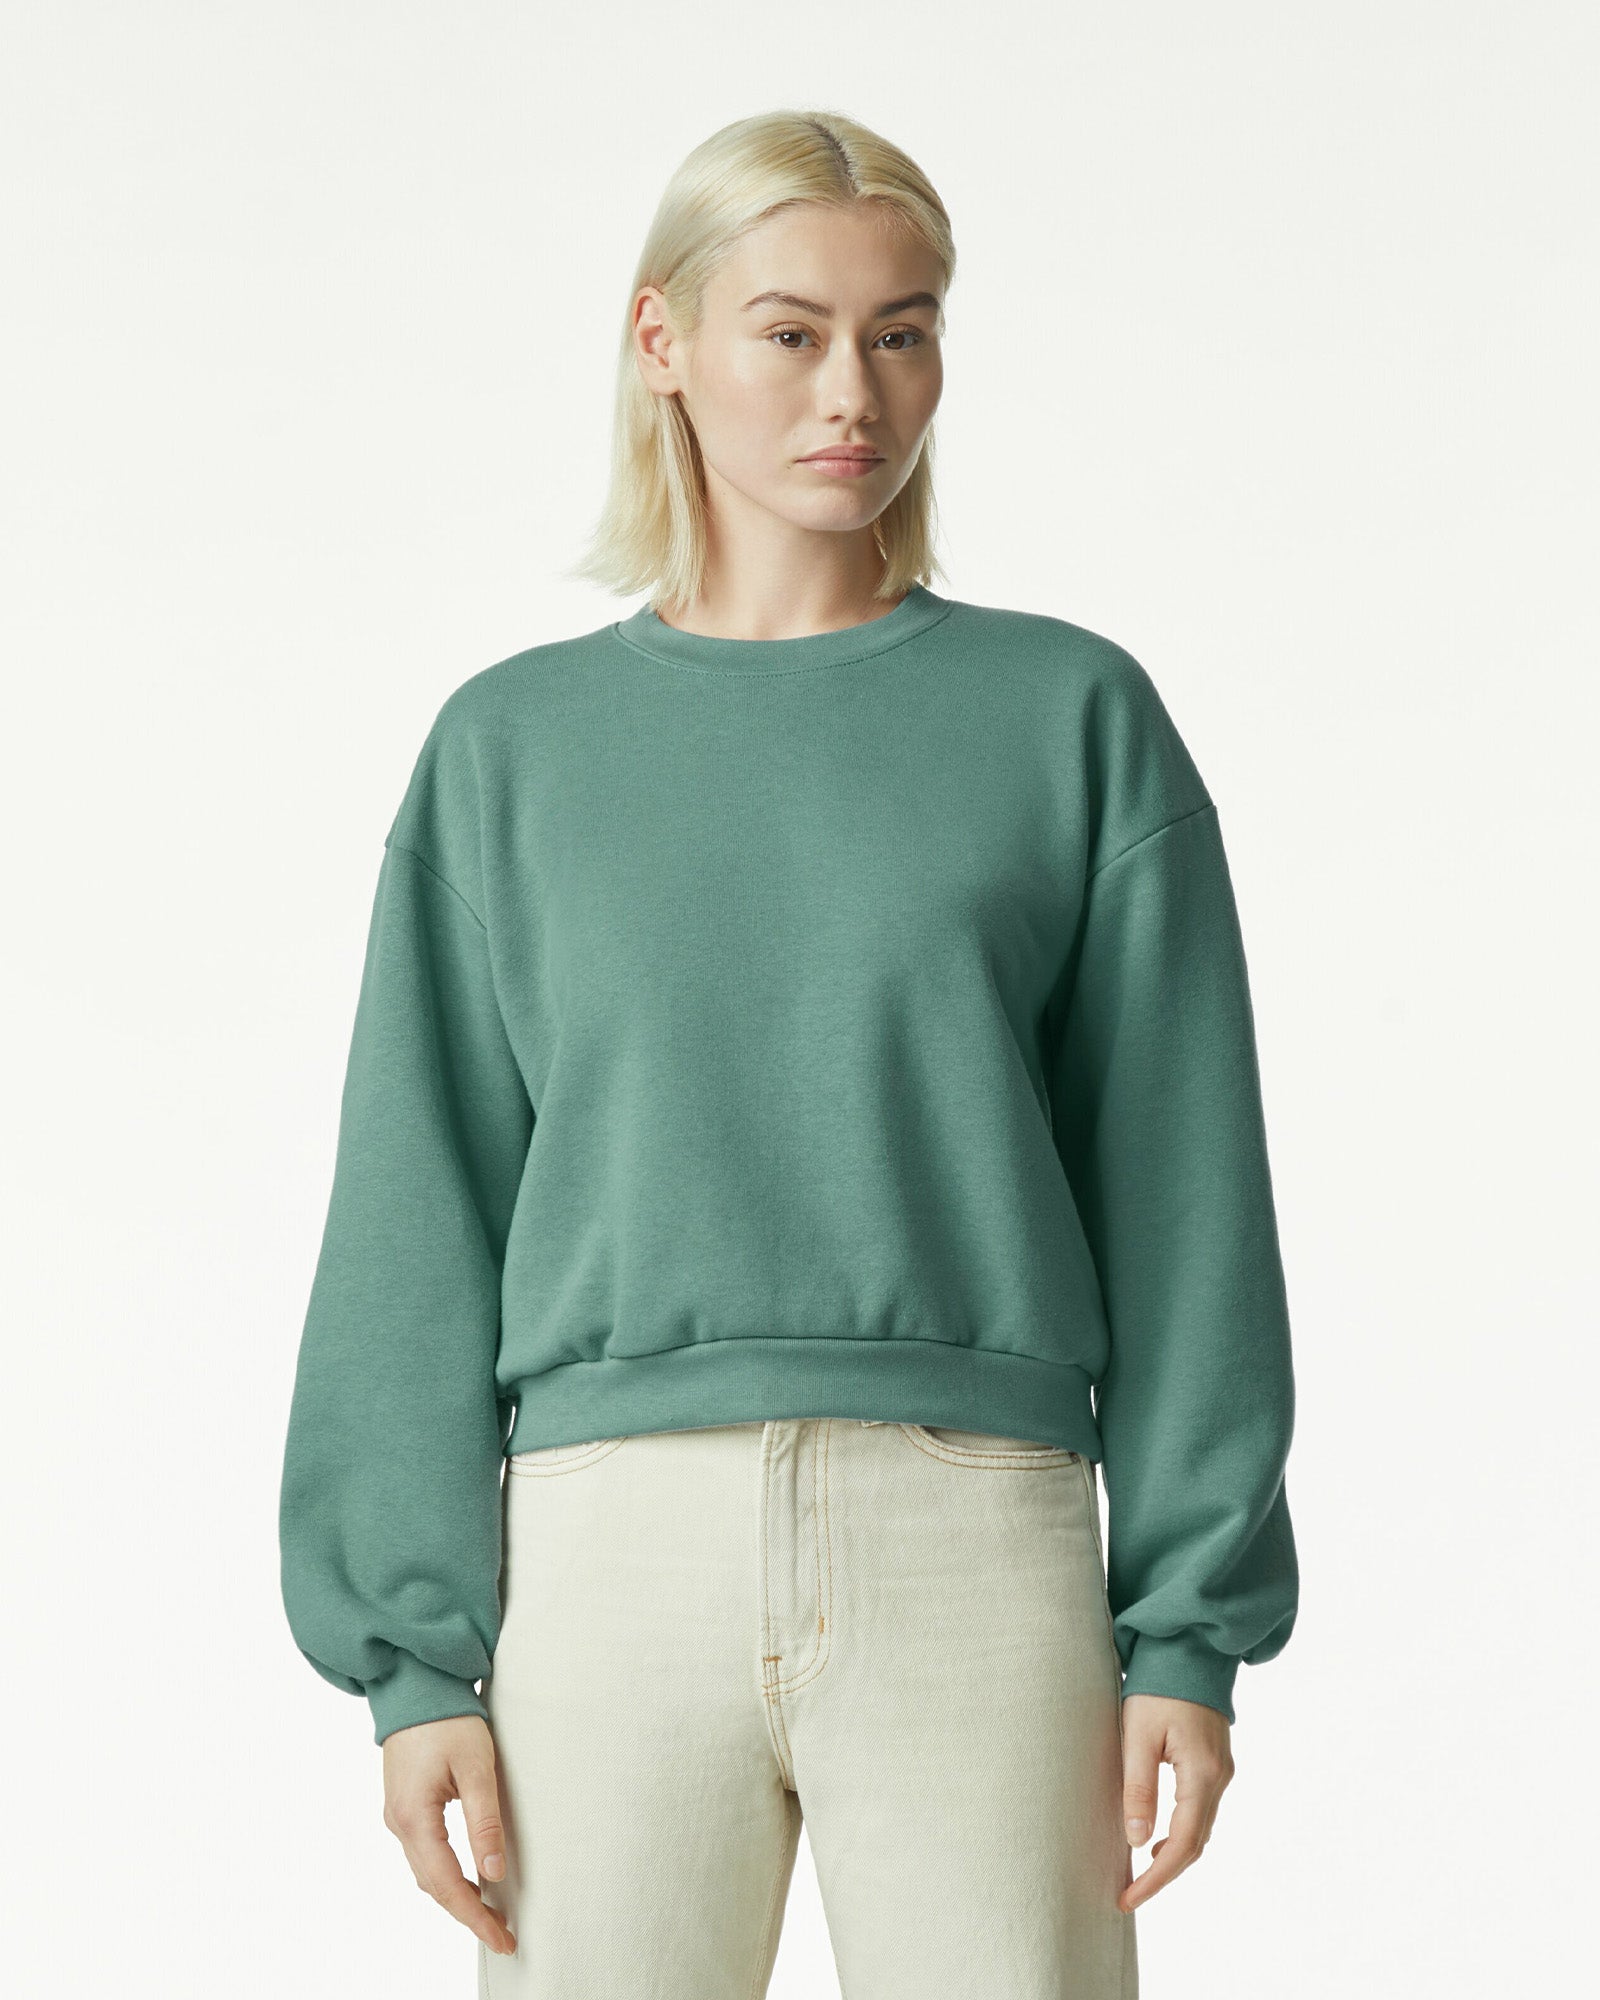 Reflex Women's Crewneck Pullover Sweatshirt